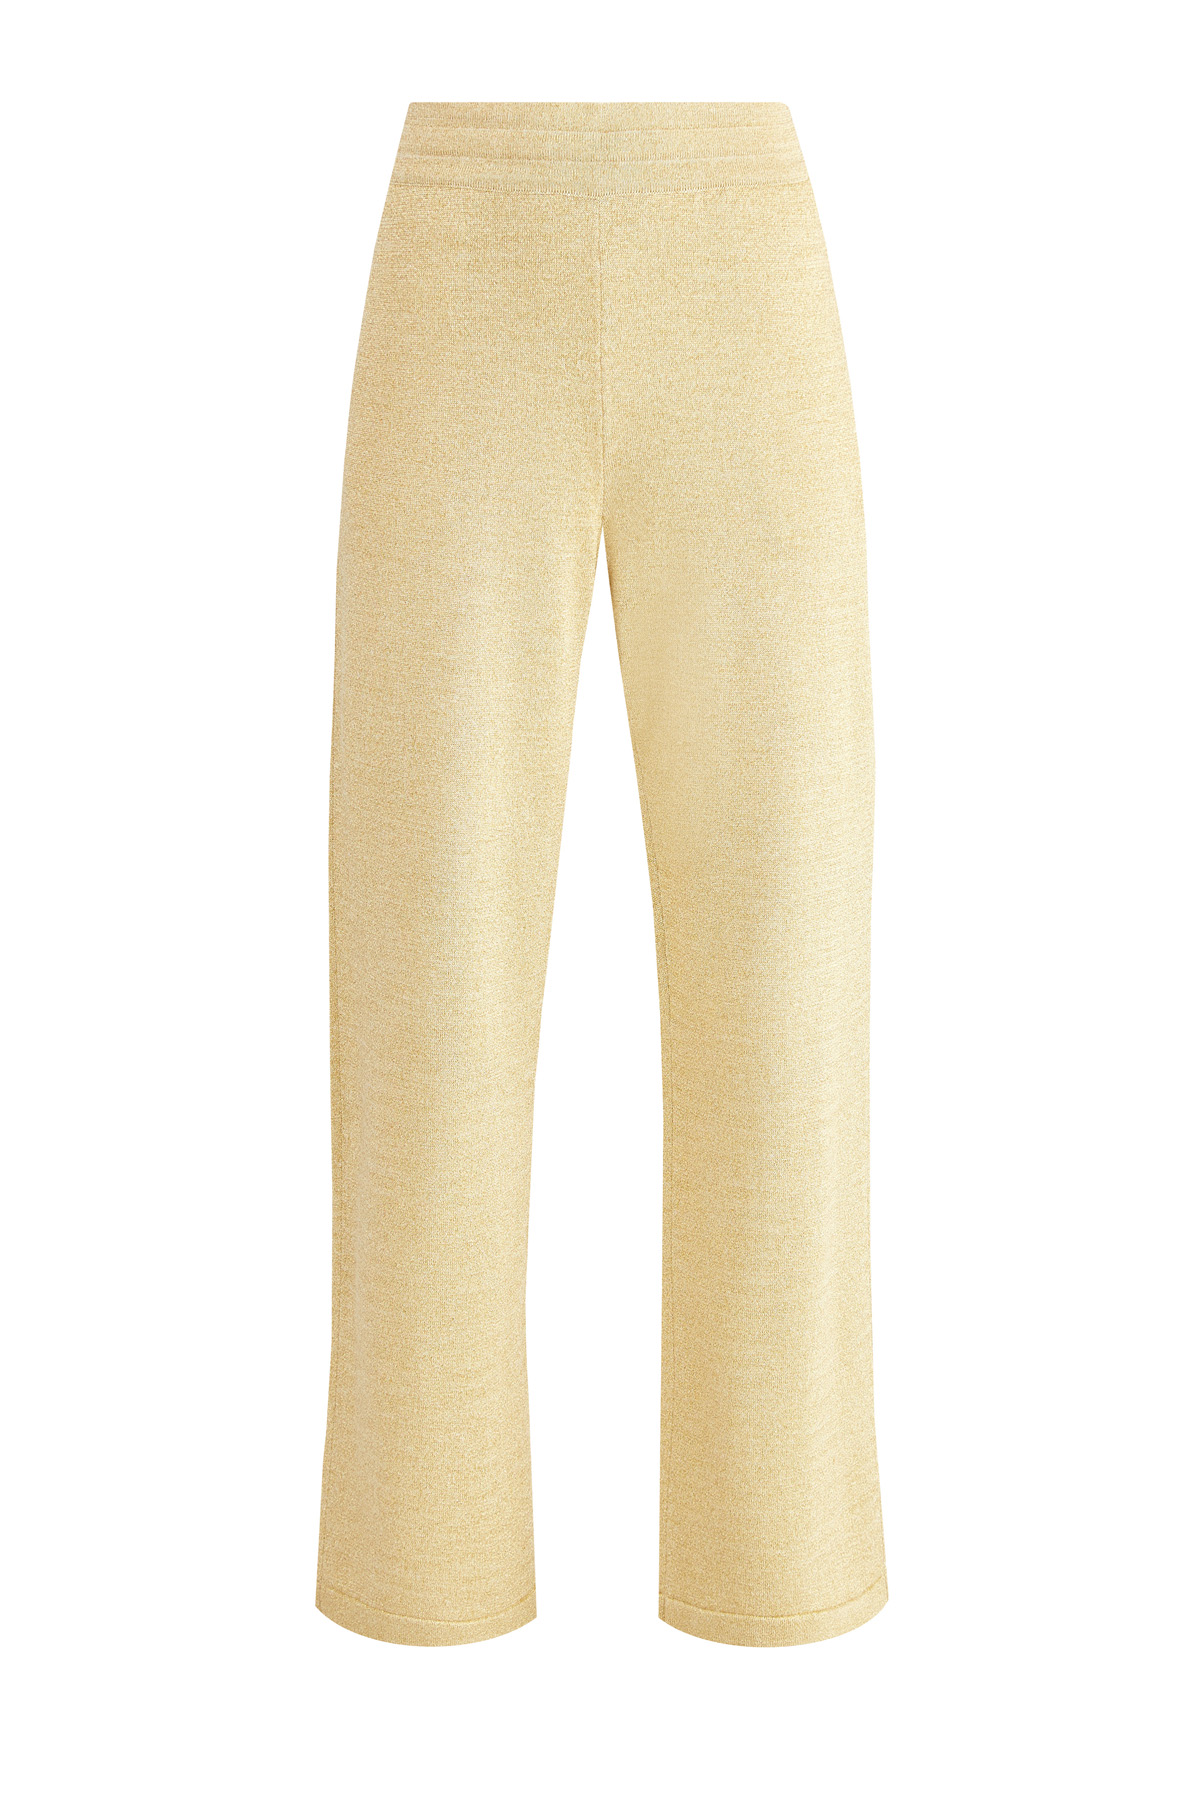 Широкие брюки из мерцающей пряжи с люрексом золотистого цвета